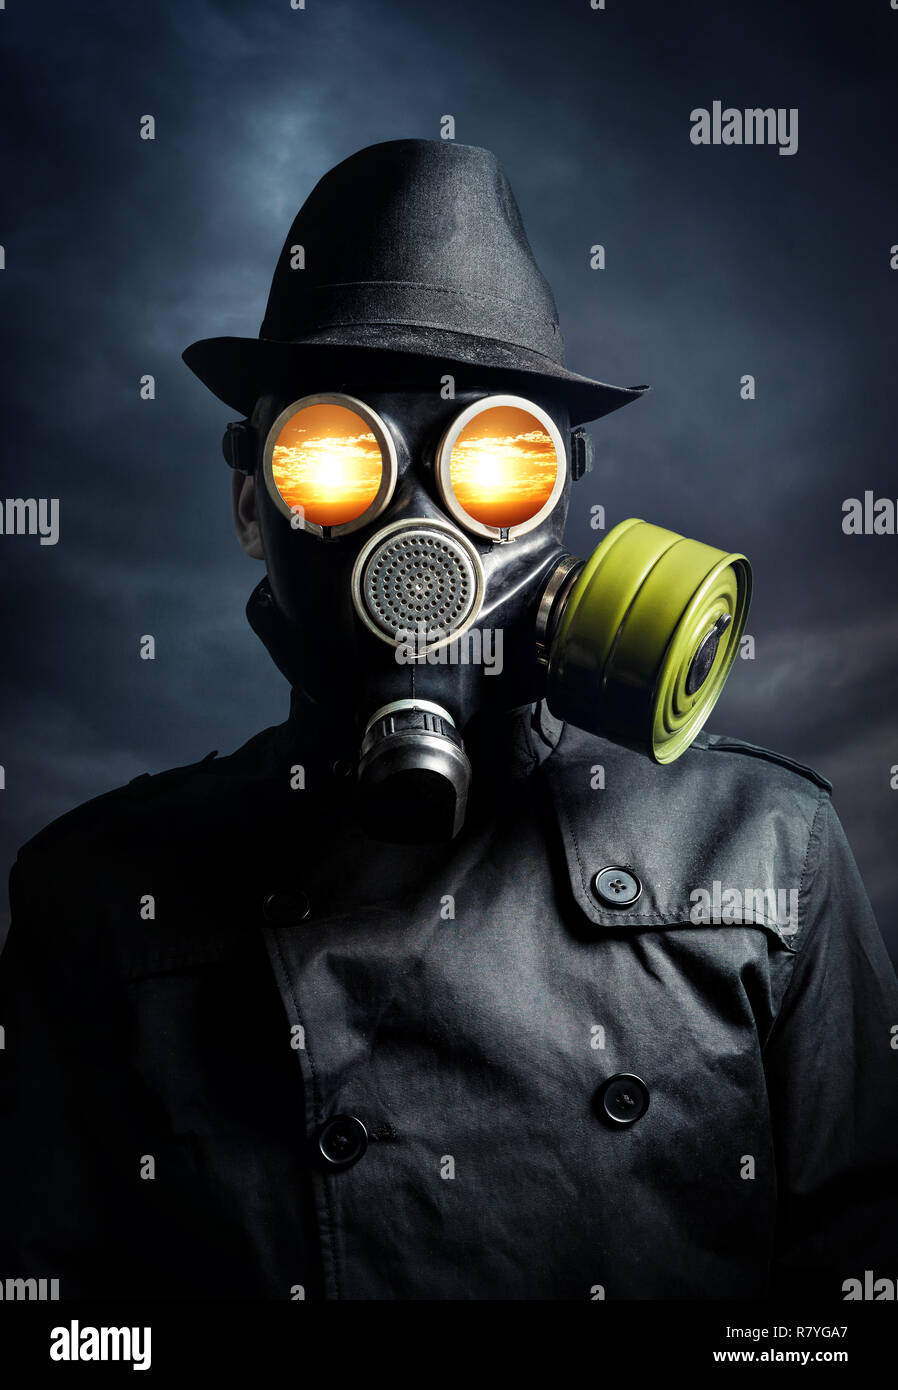 L'homme à un masque à gaz avec explosion dans ses yeux au fond de ciel sombre Banque D'Images